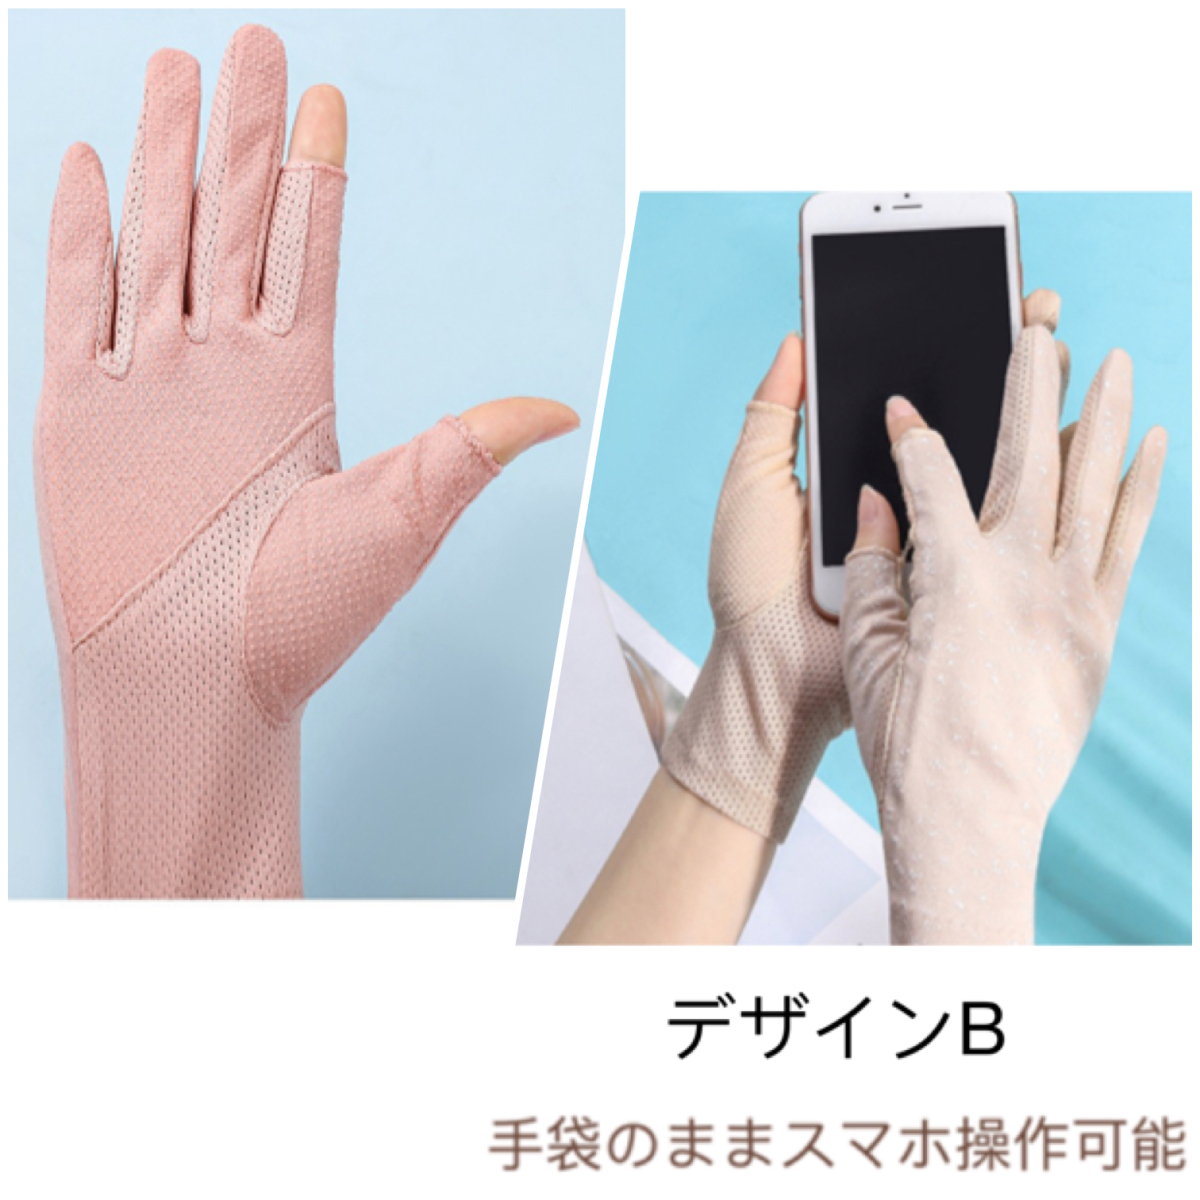  женский UV cut Short перчатки предотвращение скольжения палец есть . использование не по назначению палец нет смартфон соответствует UV cut ультрафиолетовые лучи меры вентиляция тонкий симпатичный модный летний палец порез .uv перчатки 